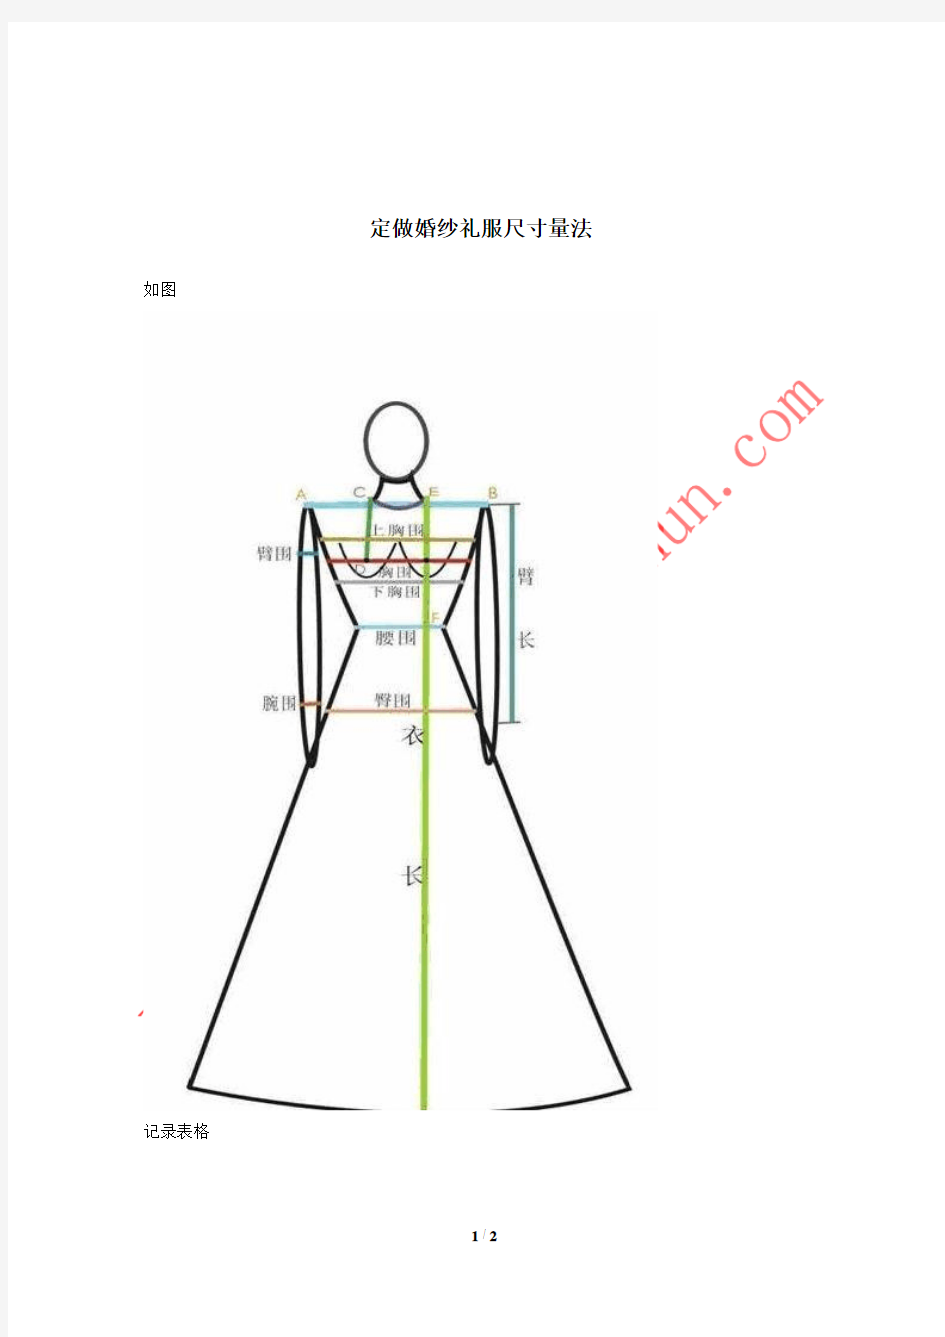 定做婚纱礼服尺寸量法1